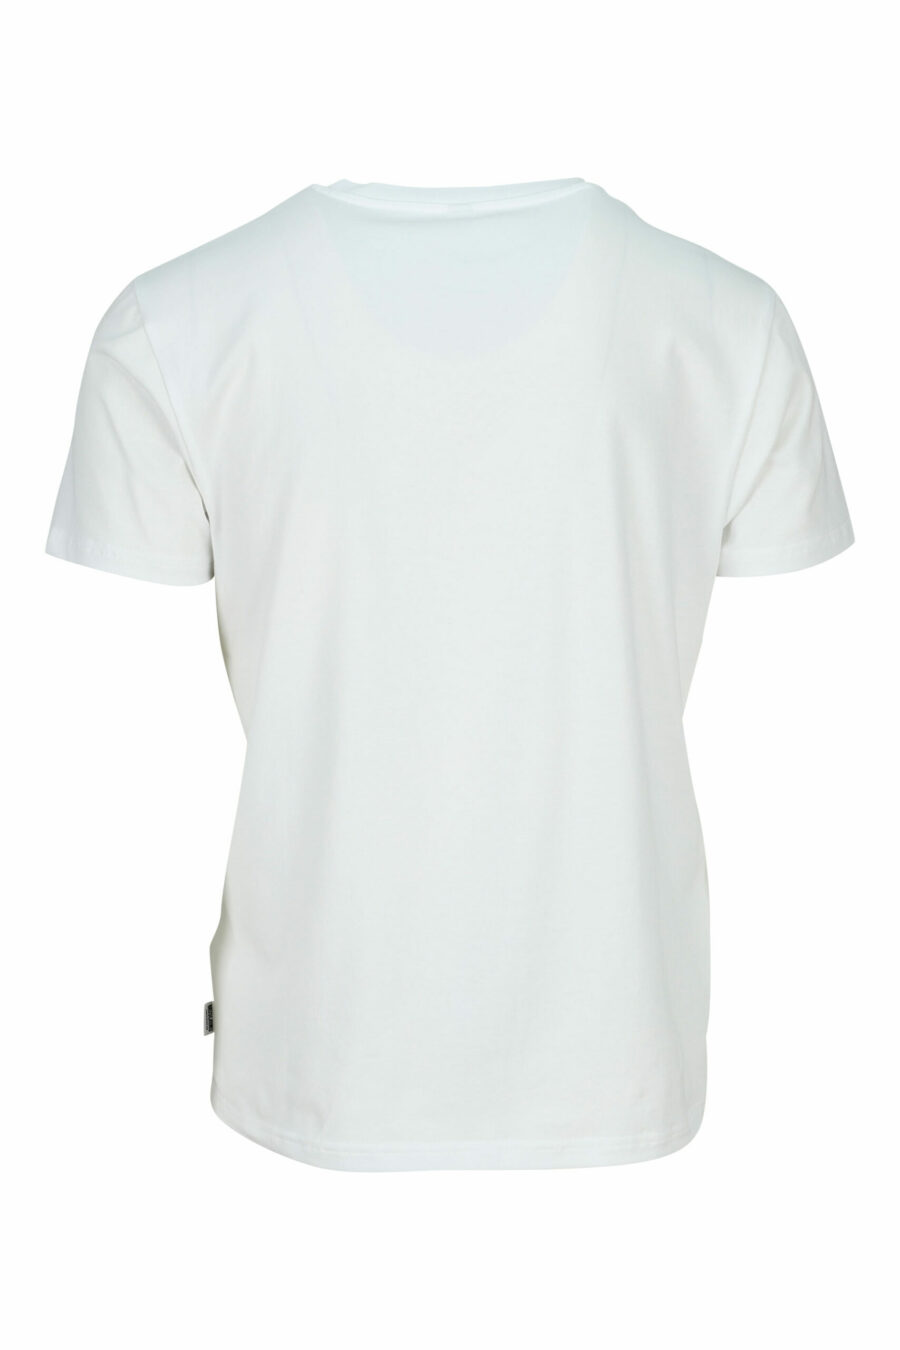 Camiseta blanca con minilogo oso "underbear" en goma negro - 667113602585 1 scaled